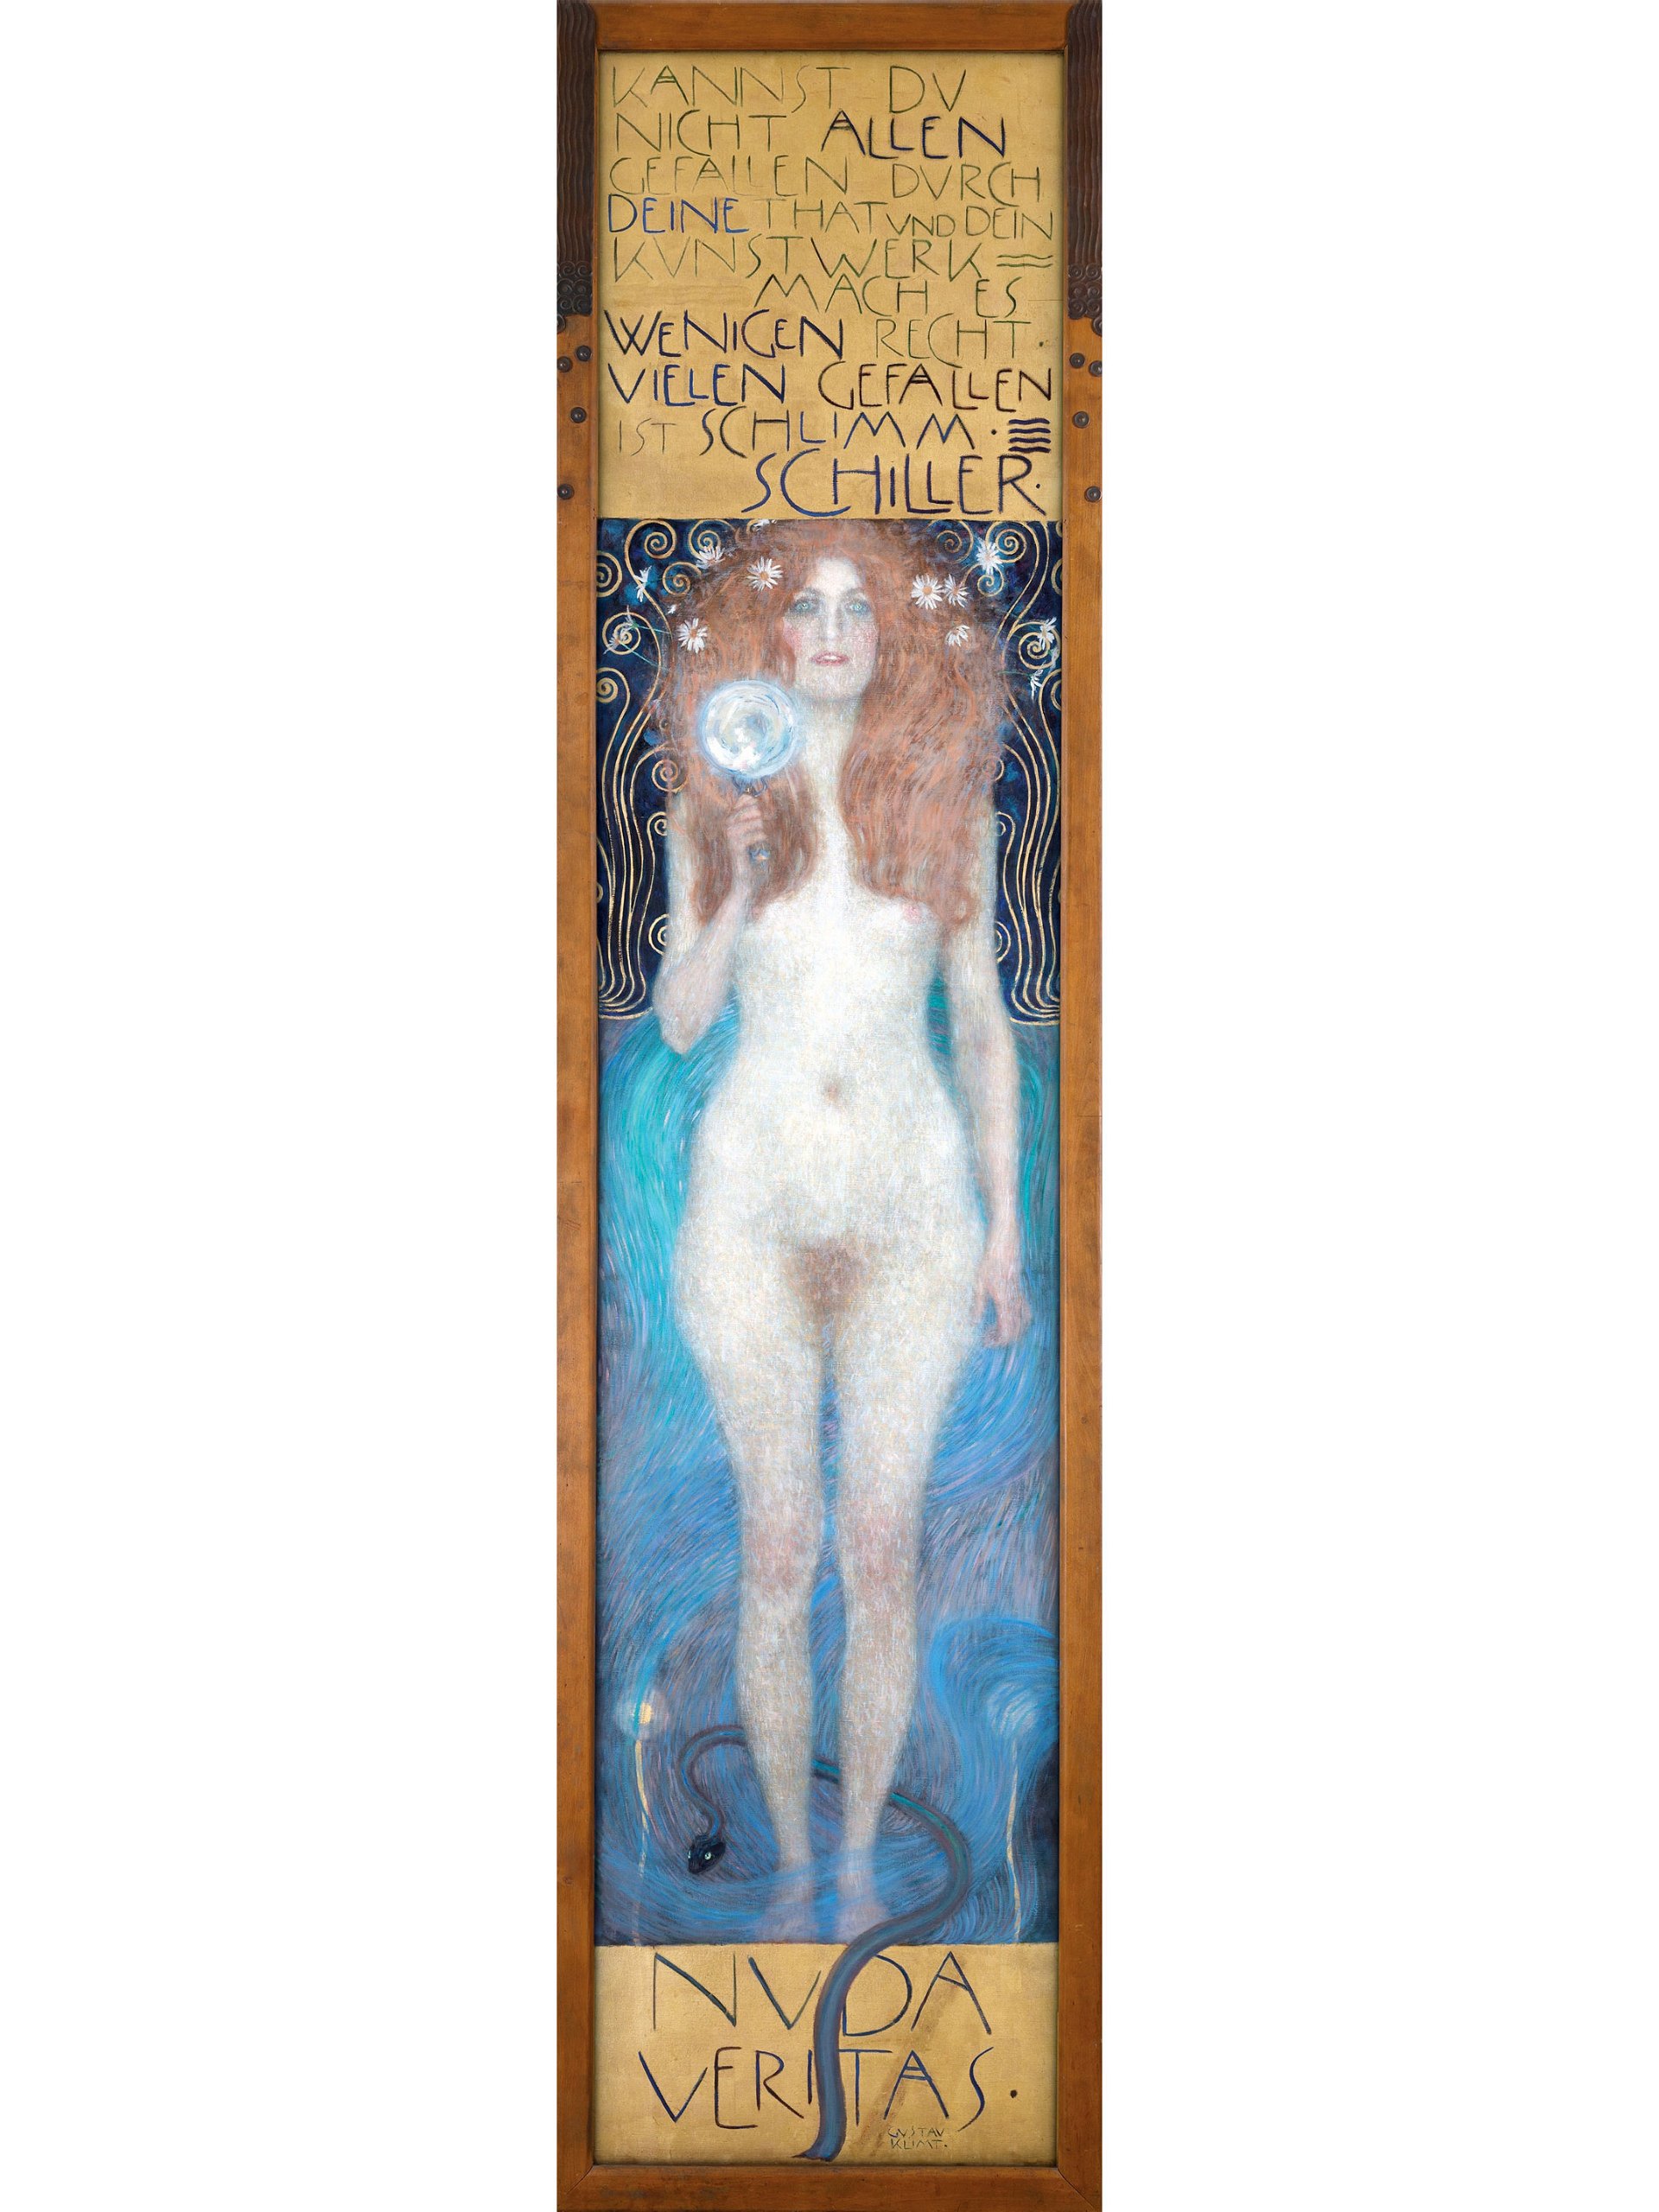  »Nuda Veritas« von Gustav Klimt. »Die überwältigend schöne Frau hält uns den Spiegel vor – allen recht getan ist eine Kunst, die niemand kann. Die kompromisslose Wahrhaftigkeit, die Gustav Klimt mit diesem eindringlichen Bild herausfordert, sollte uns nicht nur in künstlerischen Fragen beschäftigen.«